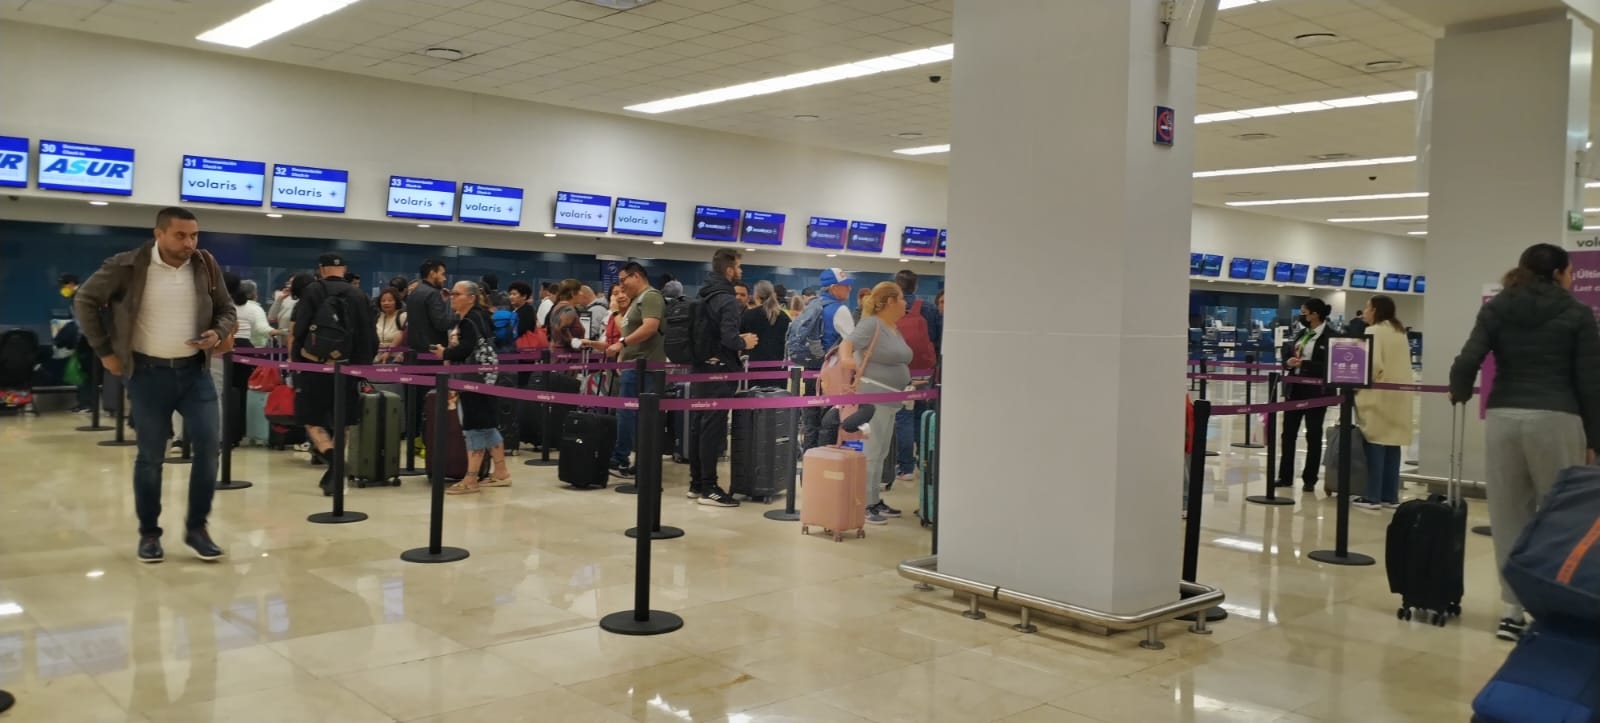 El vuelo de Volaris de la ruta CDMX-Mérida se retrasó más de dos horas